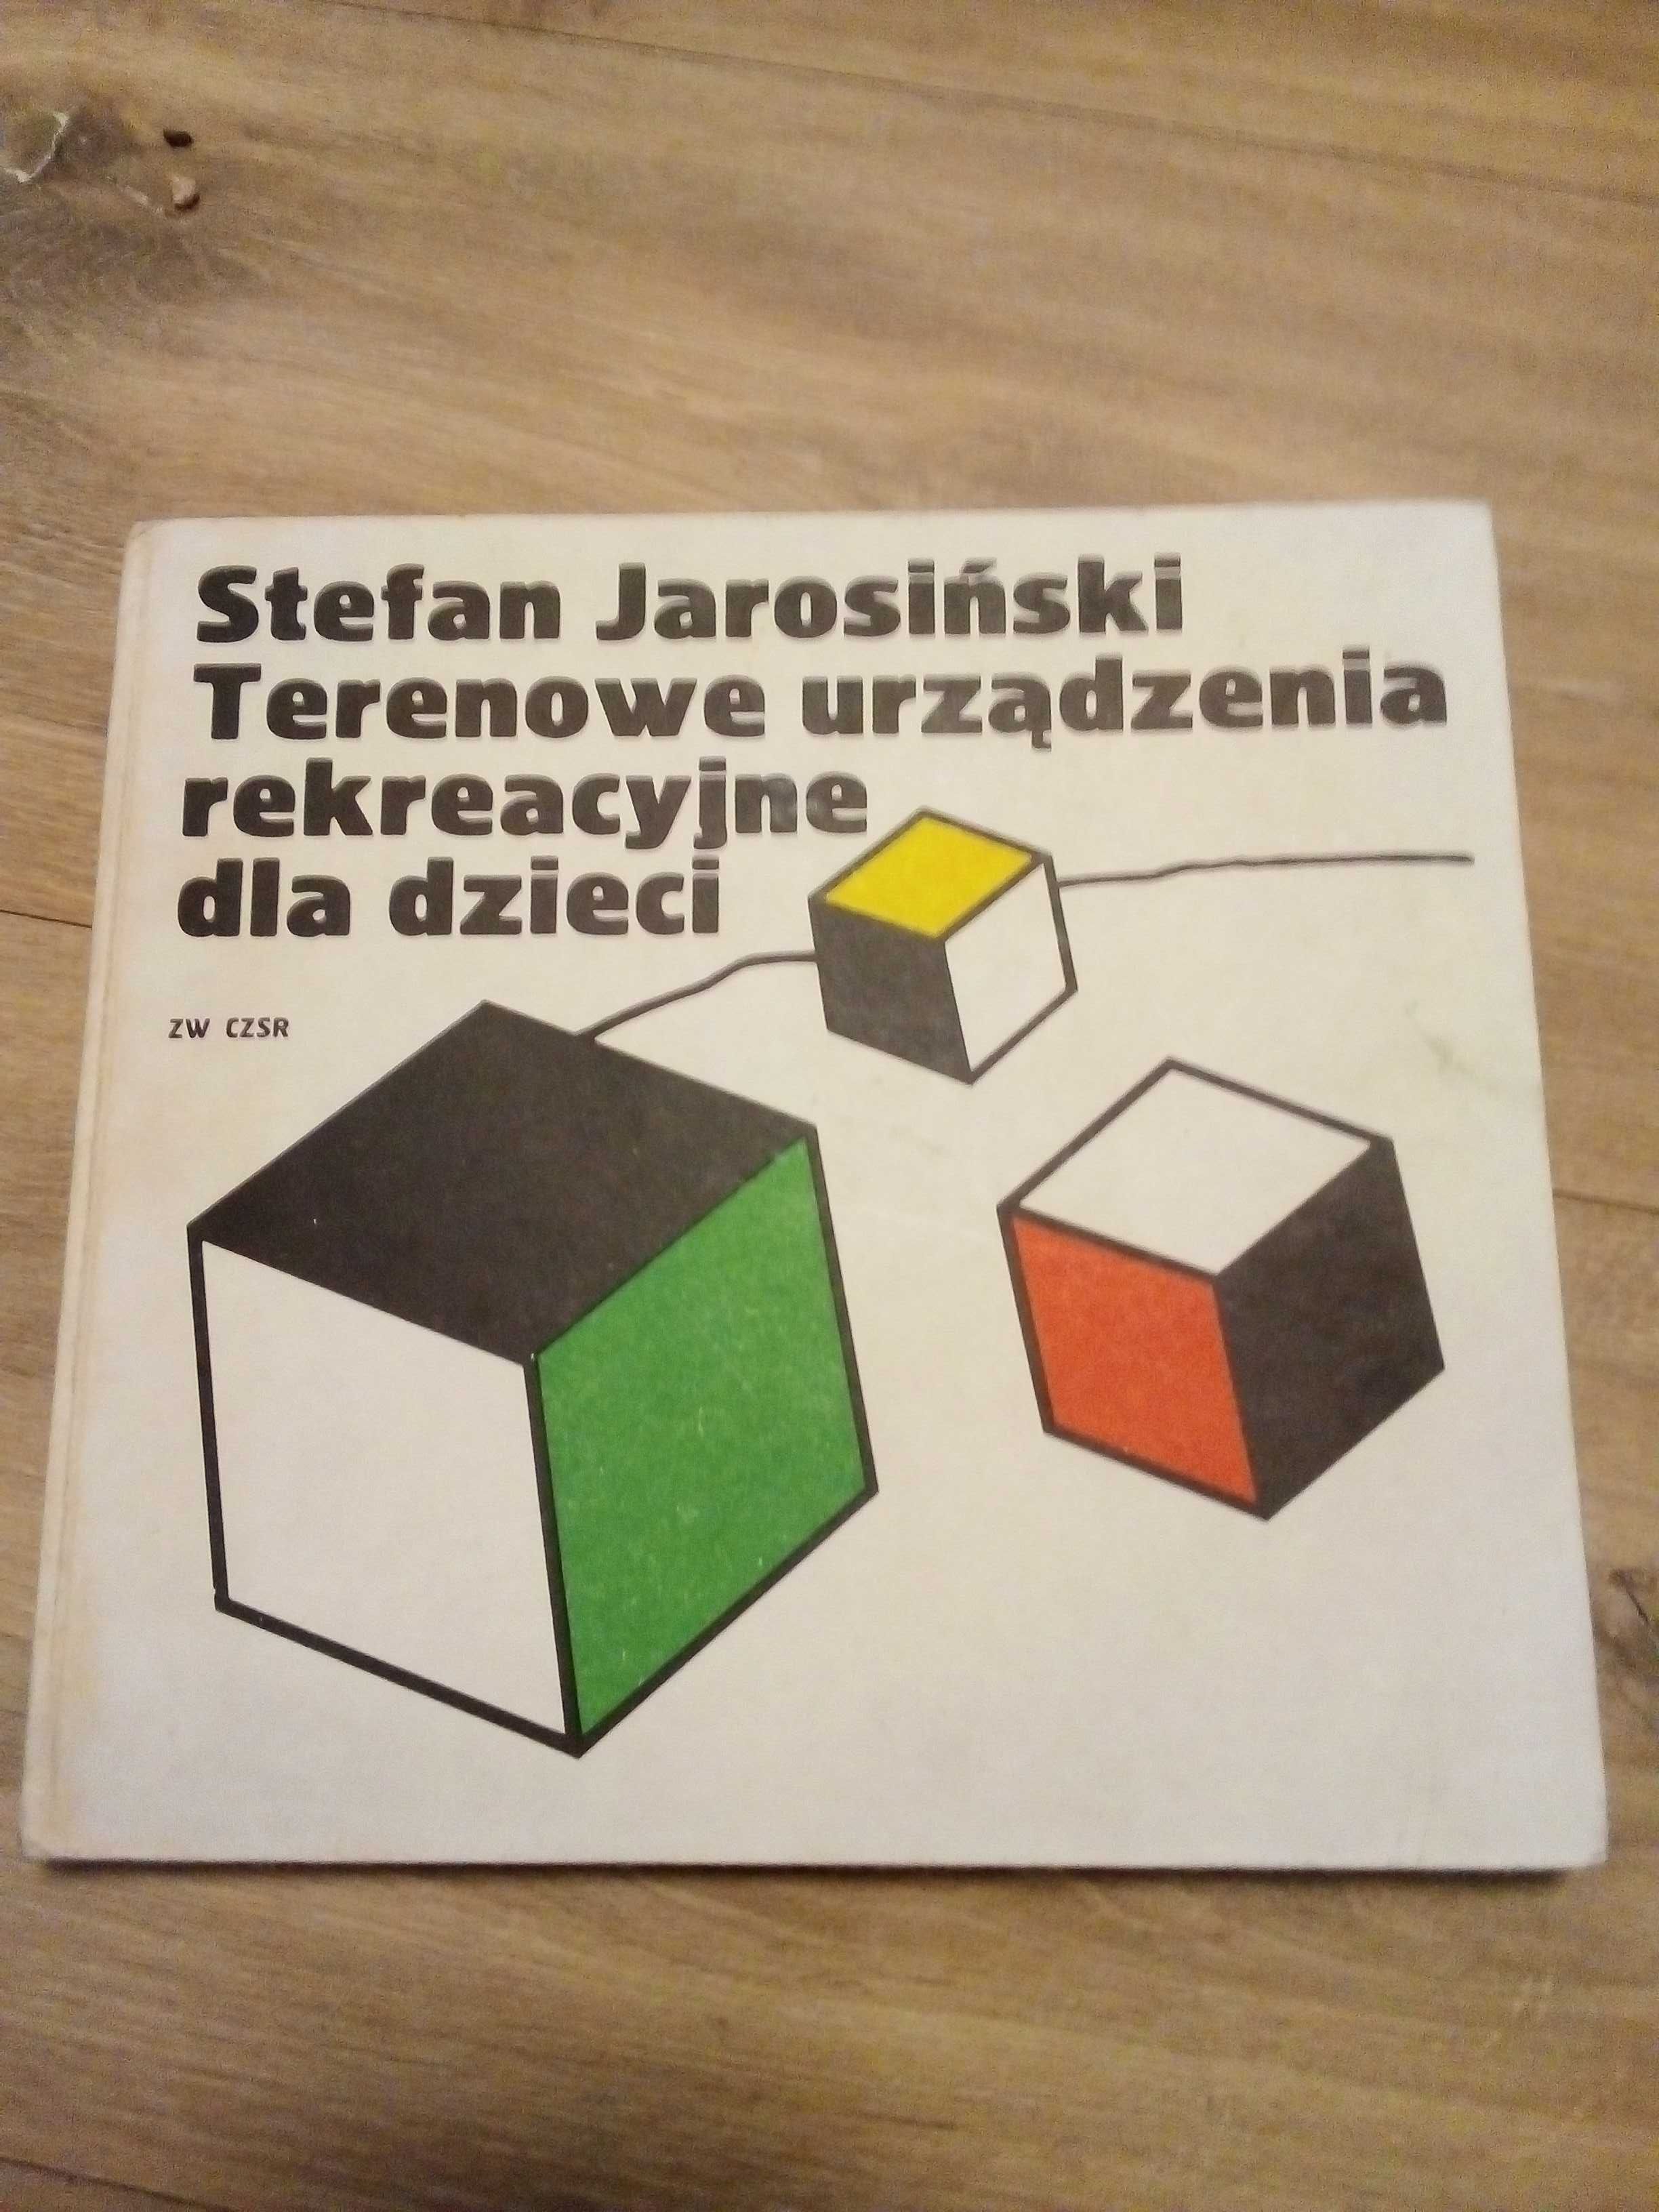 Terenowe urządzenia rekreacyjne, Jarosinski, 1977r